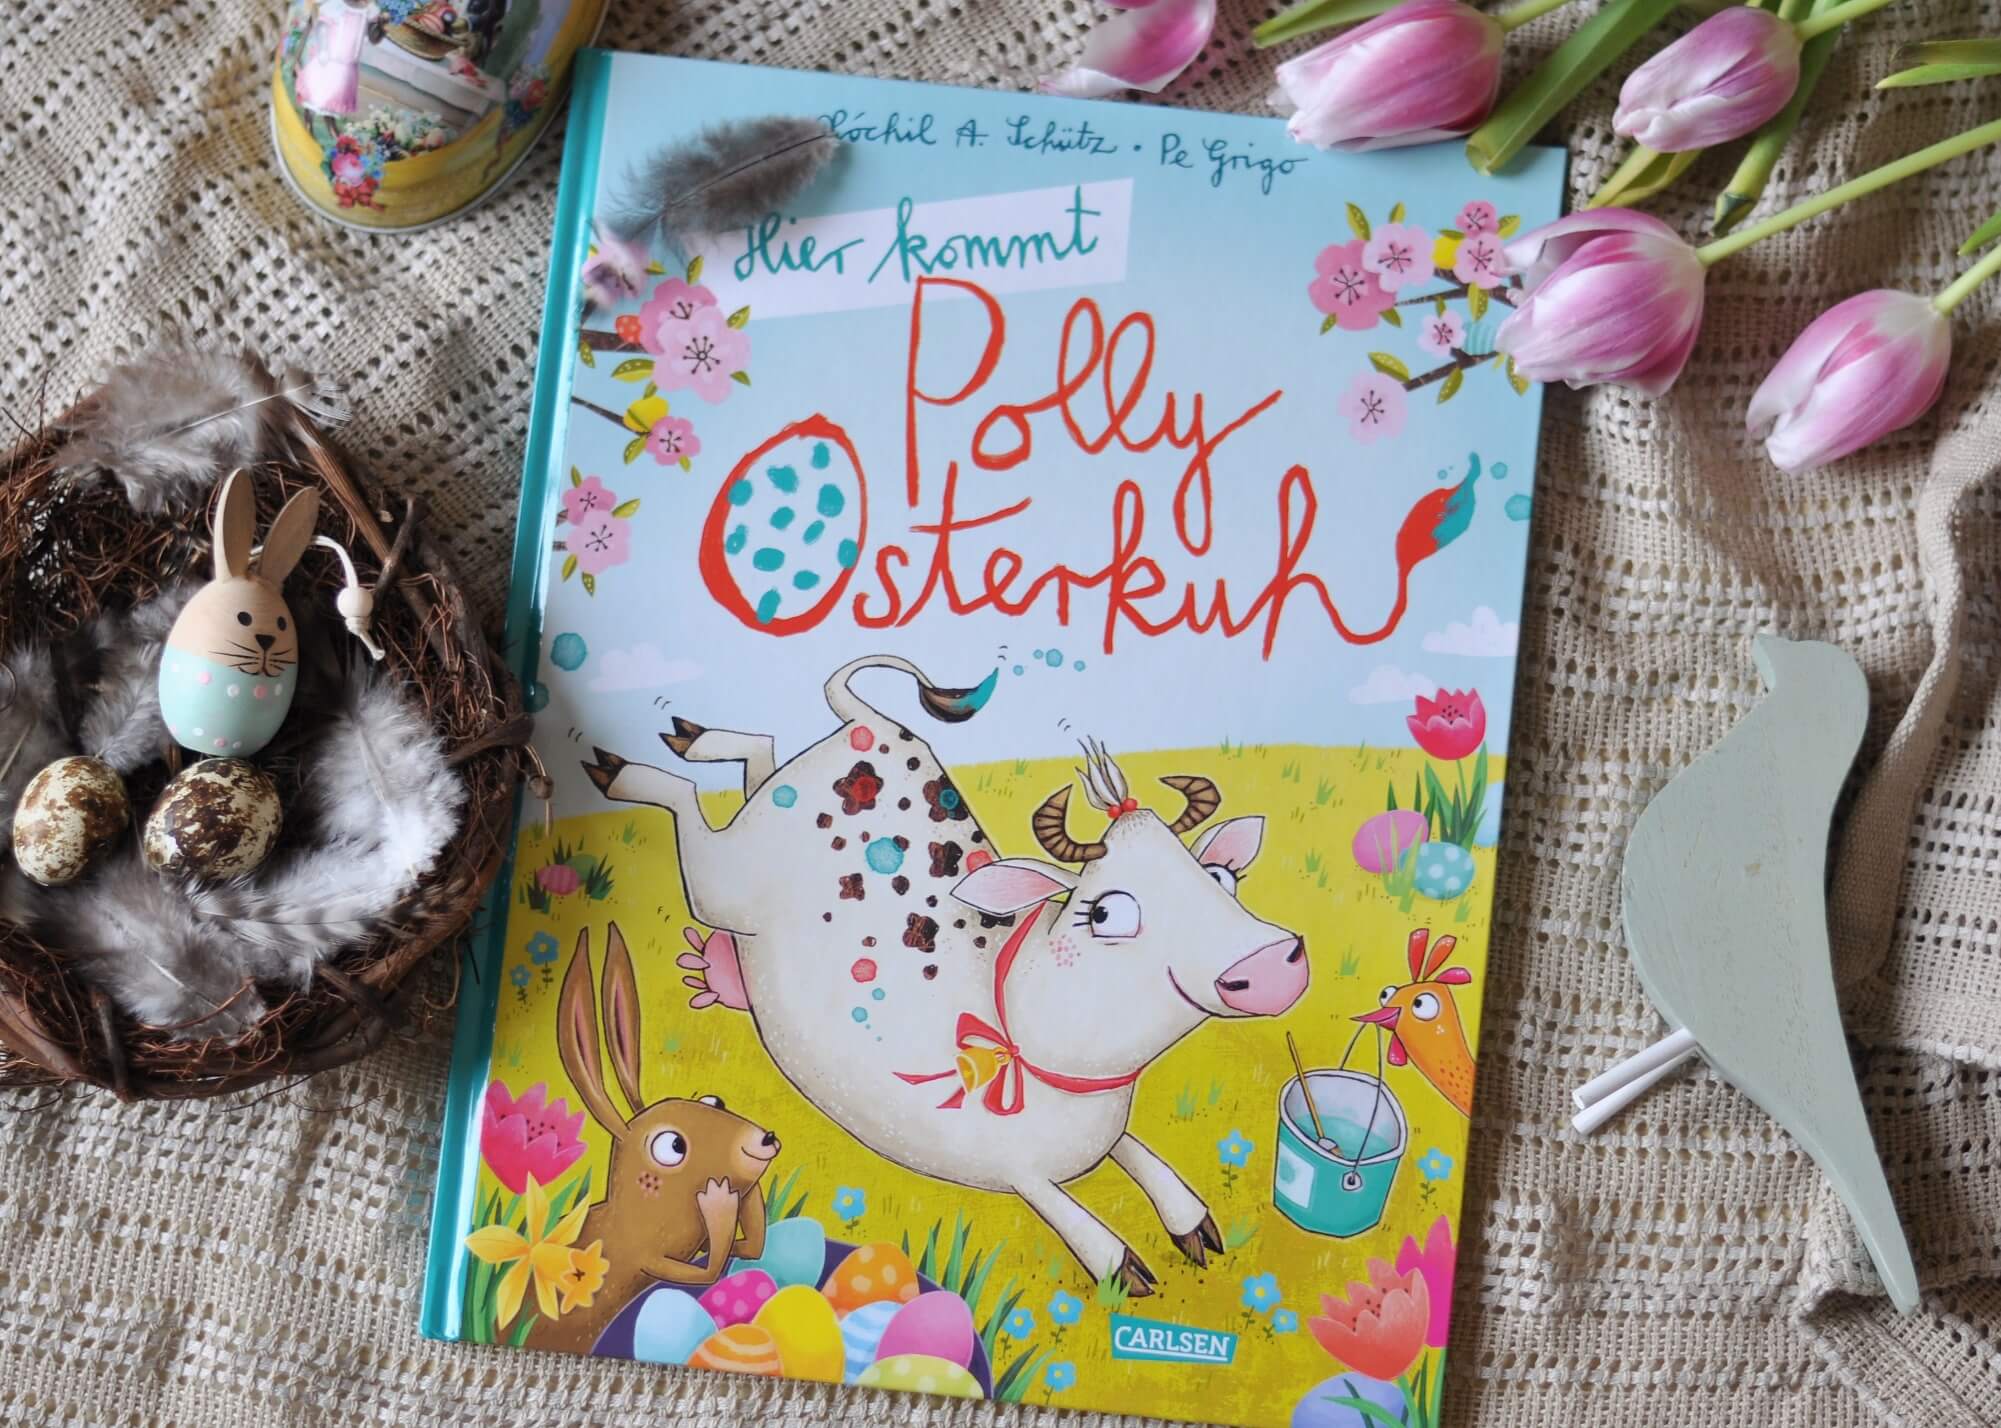 in Hier kommt Polly Osterkuh von Xóchil Schütz. Polly möchte nämlich auch Eier bemalen, nur ist das schwieriger als gedacht. #kuh #ostern #kinderbuch #bilderbuch #frühling